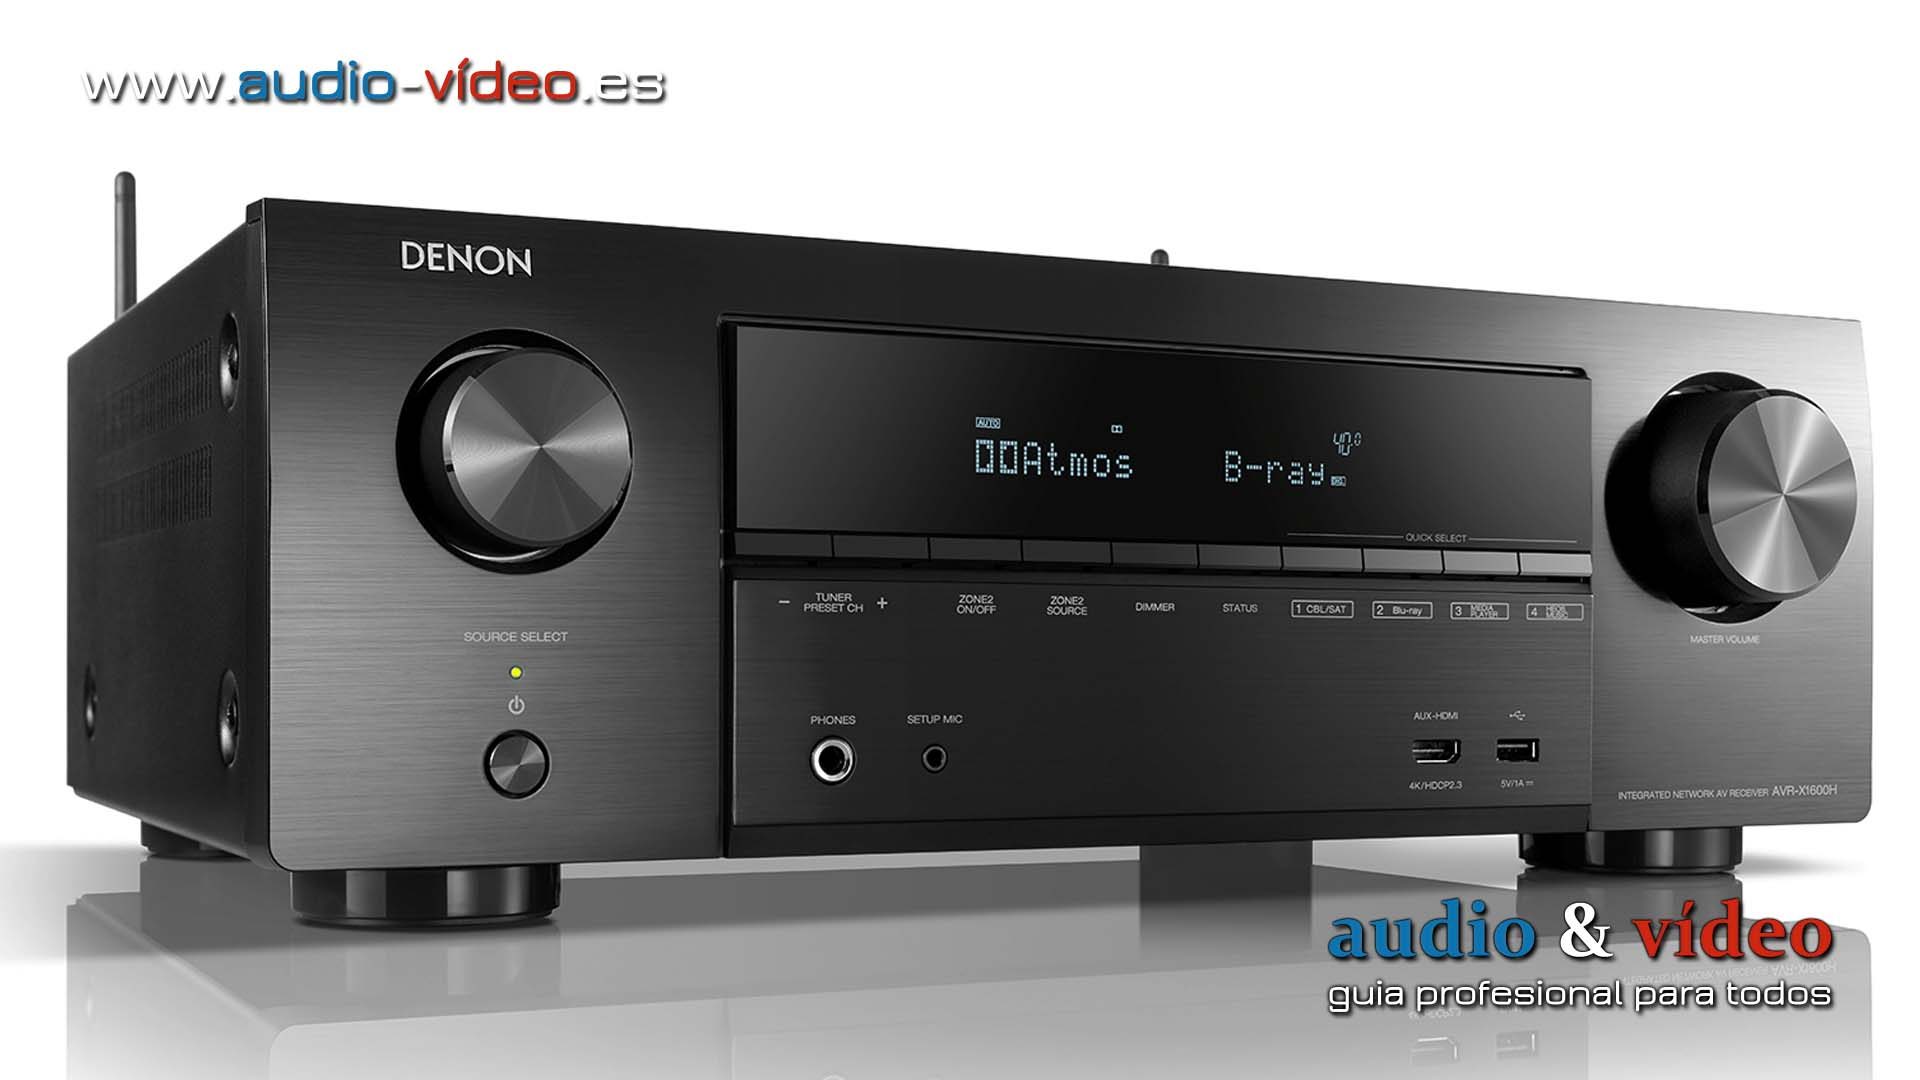 Denon amplía su Serie X con amplificador Home Cinema – el AVR-X1600H DAB